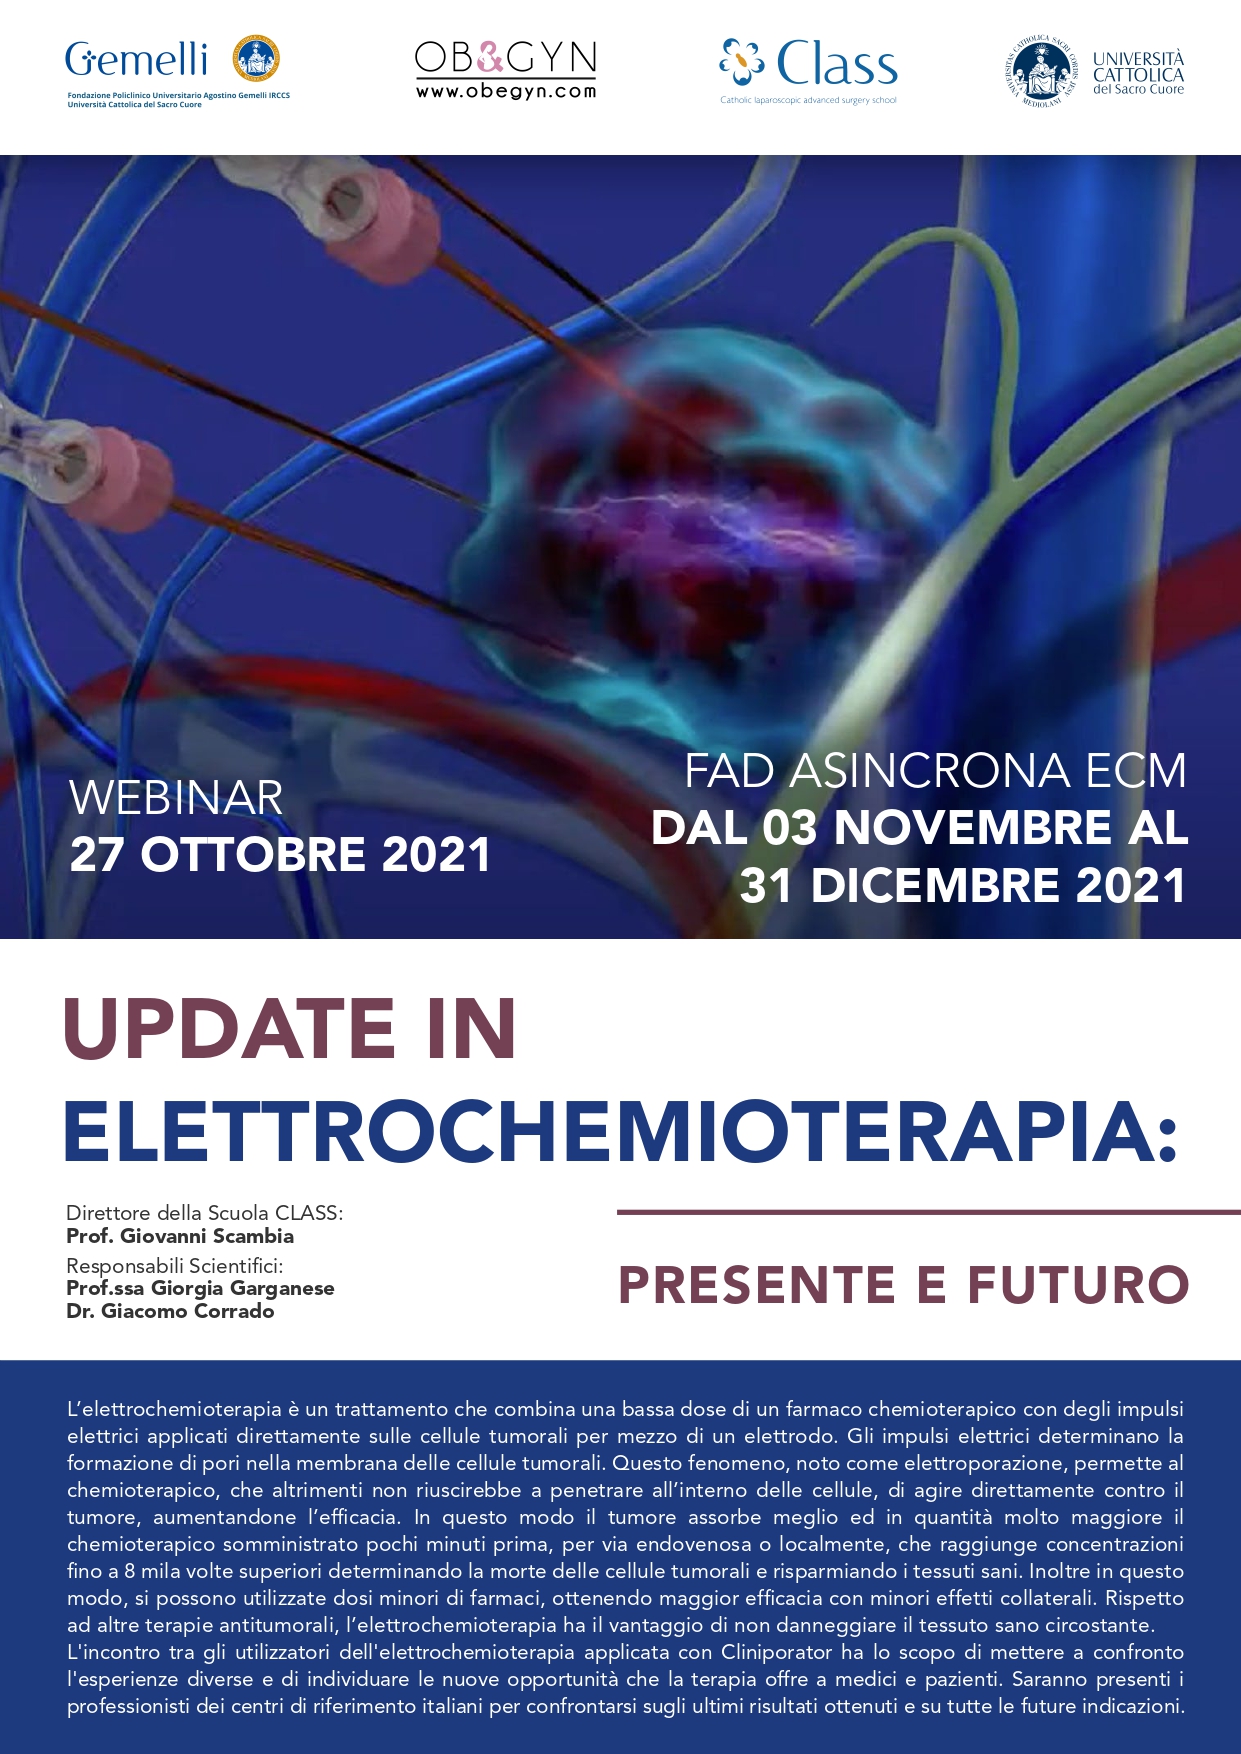 Programma Update in Elettrochemioterapia: presente e futuro - WEBINAR 27.10.2021  FAD ACCREDITATA dal 03.11.2021 al 31.12.2021